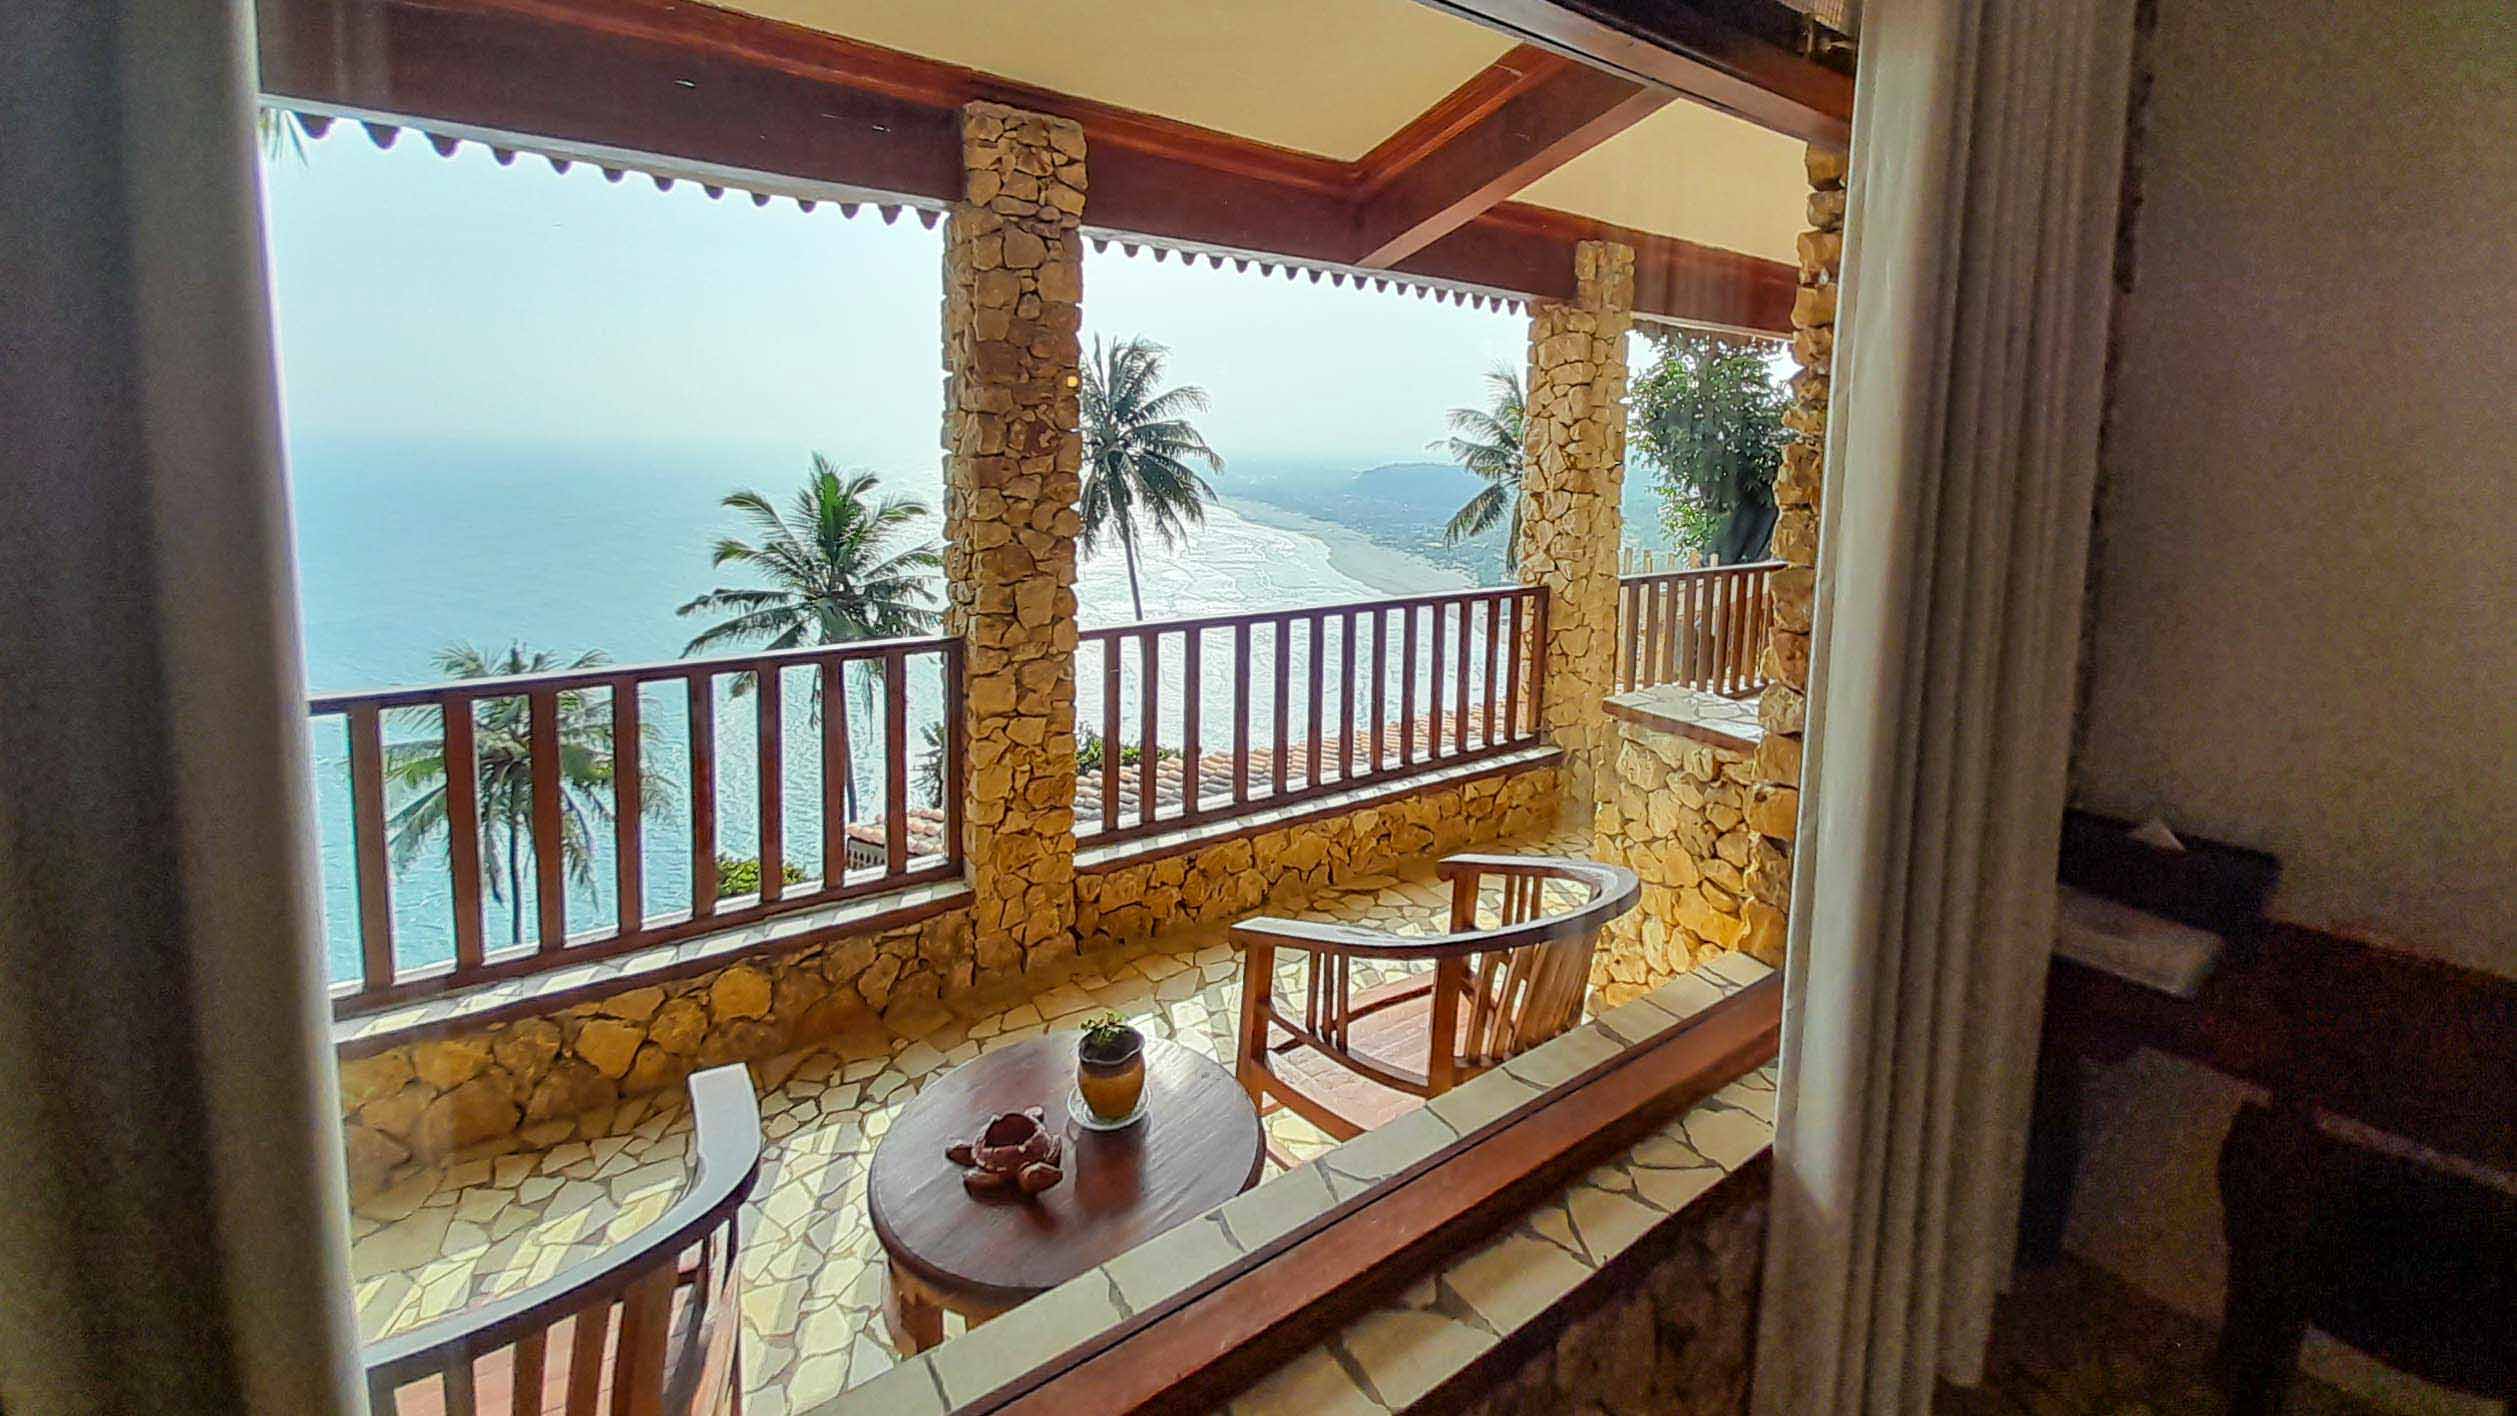 Edge Resort, rekomendasi hotel di Gunung Kidul, Jogja, dengan view laut yang Instagramable. (Dok edgeresortyogya.com)